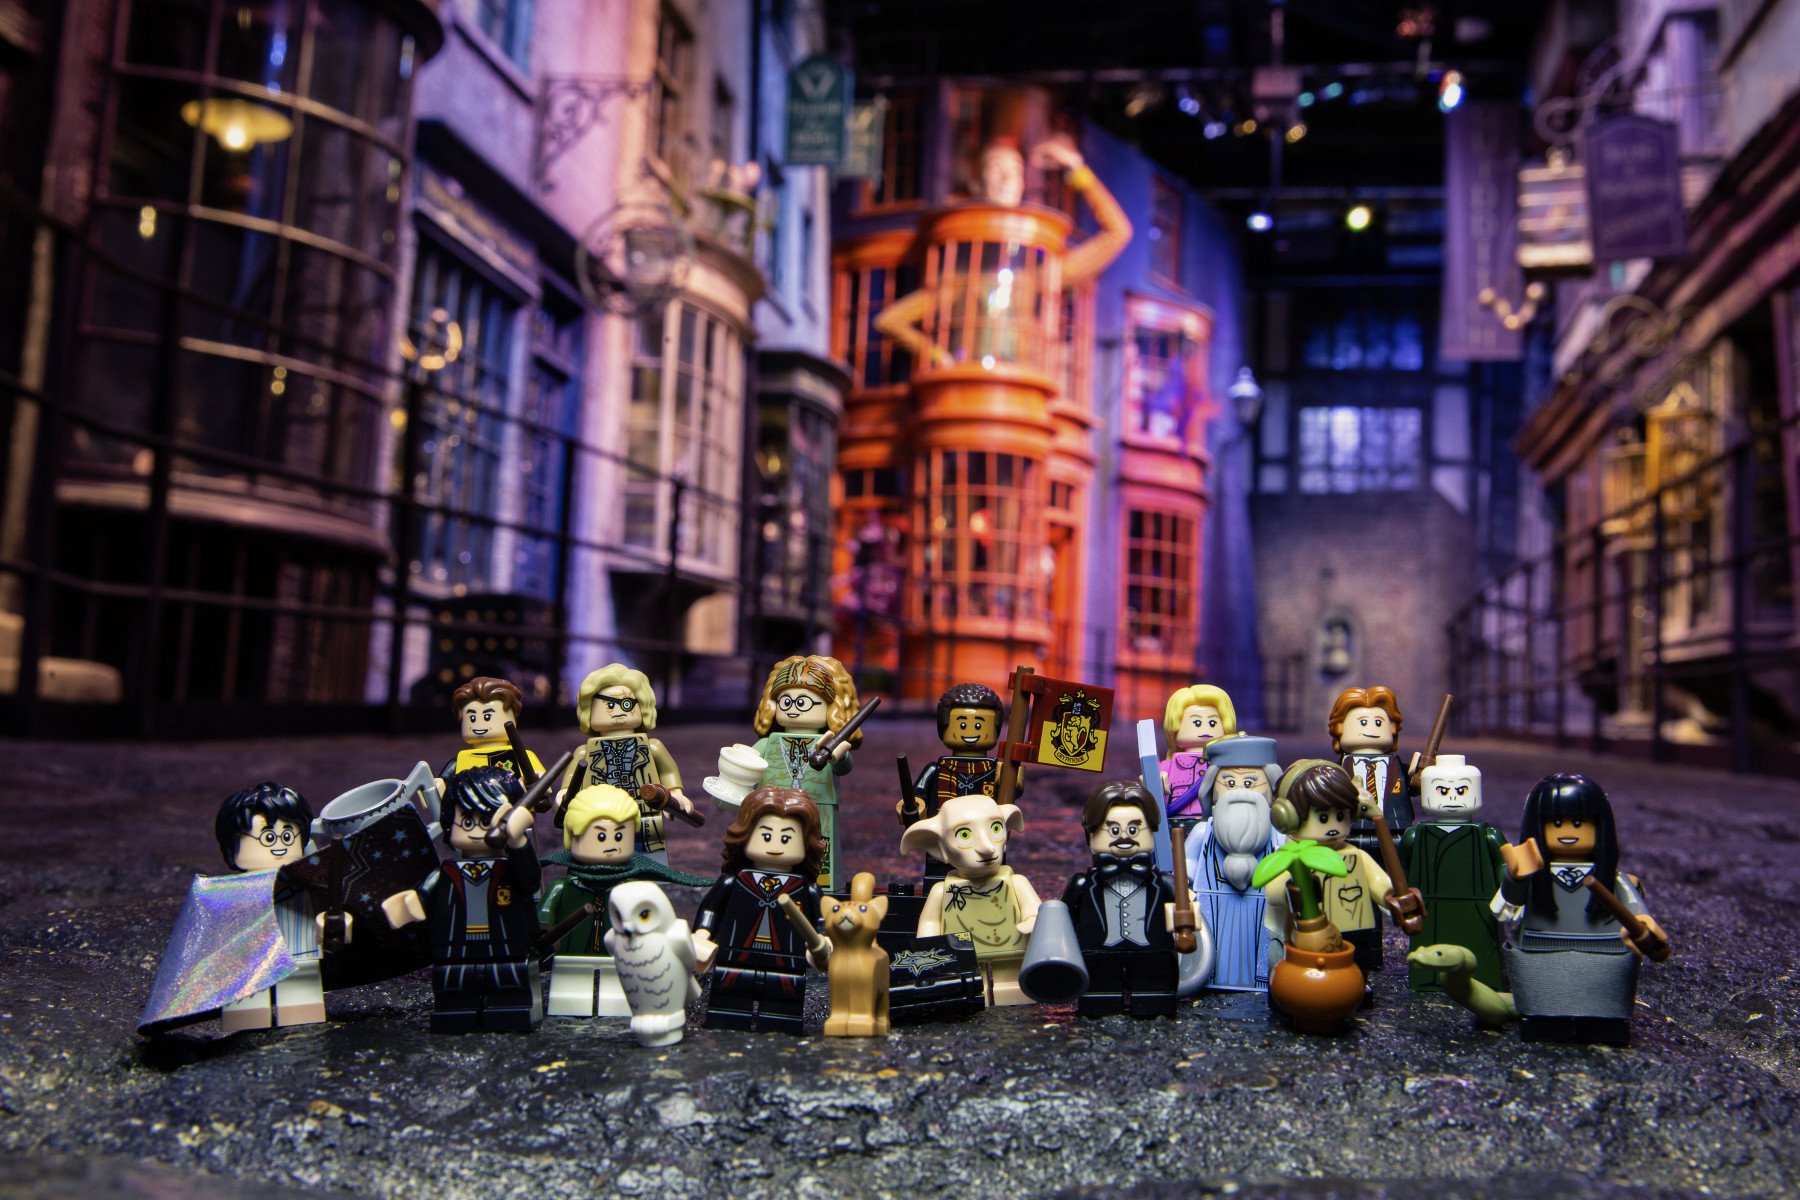 Voldemort Hermione Dumbledore Hagrid 4 pcs Harry Potter Mini Figure Set 